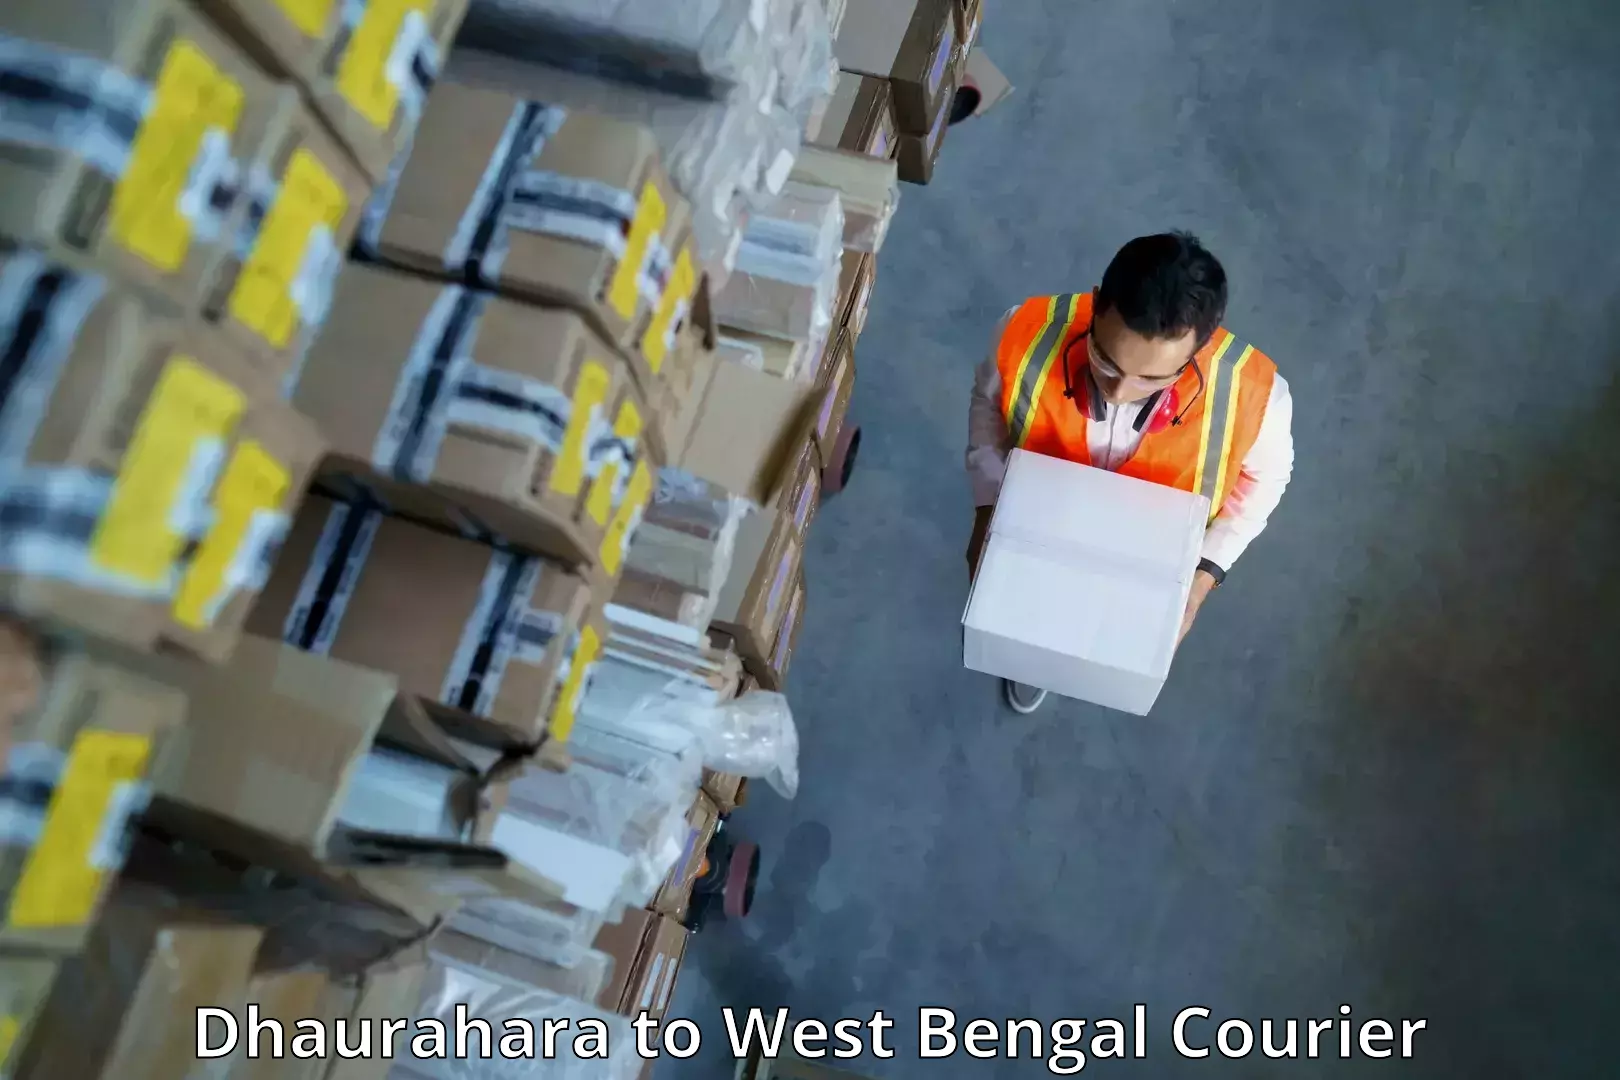 Cargo courier service Dhaurahara to Kharagpur